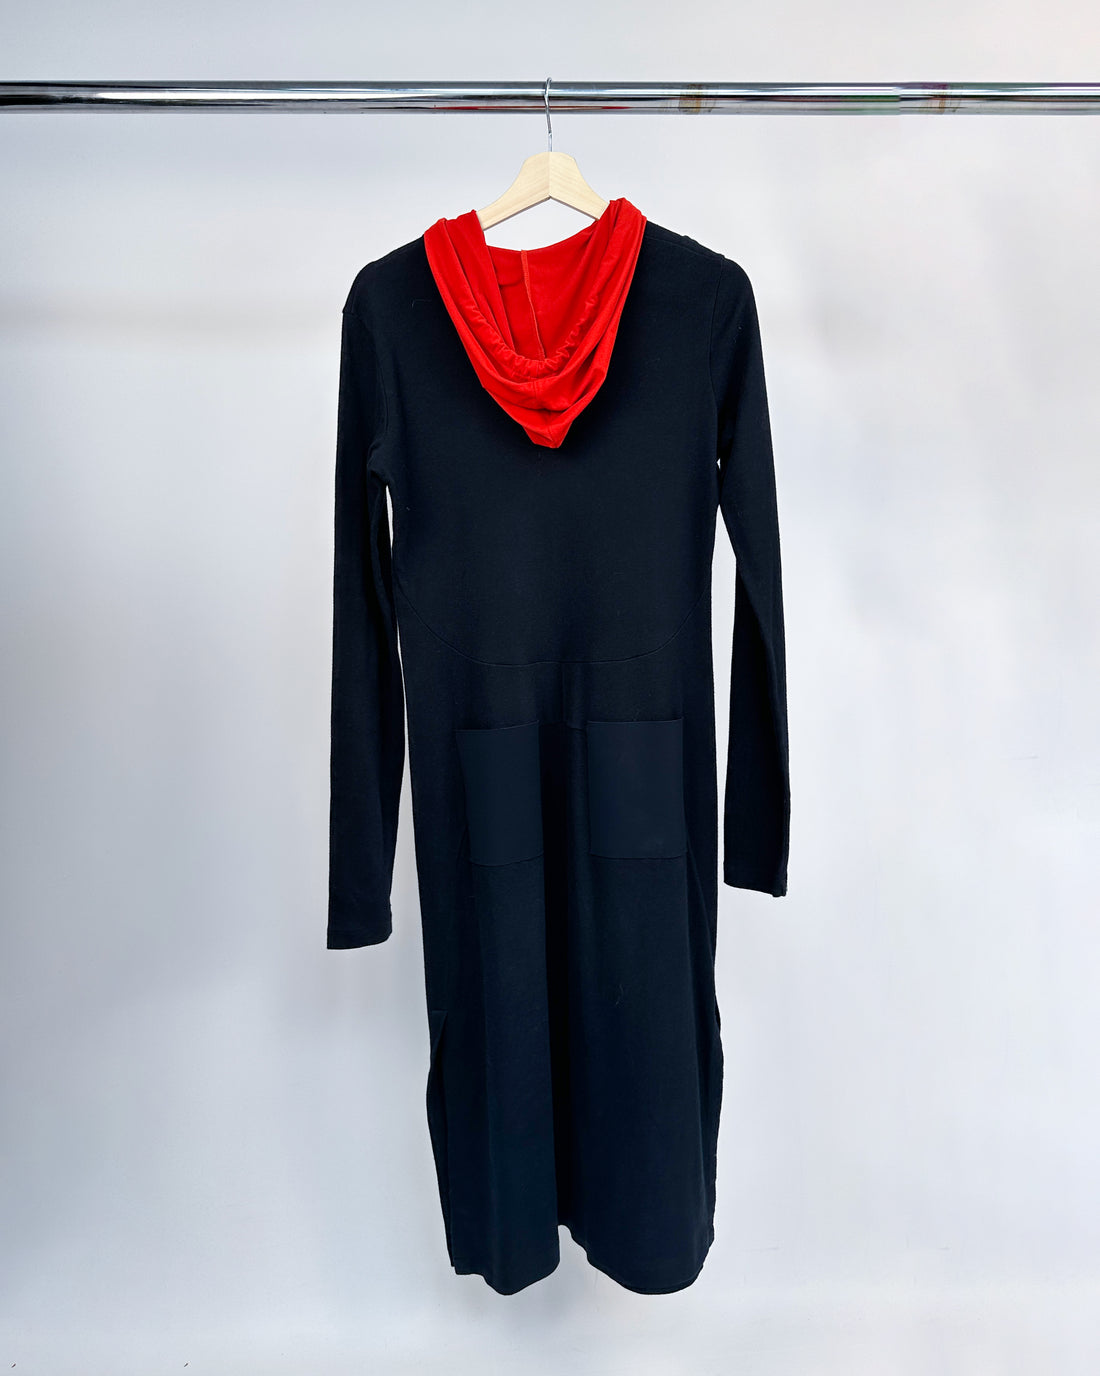 Marithé Francois Girbaud "Pocket" Hooded Dress 2000's